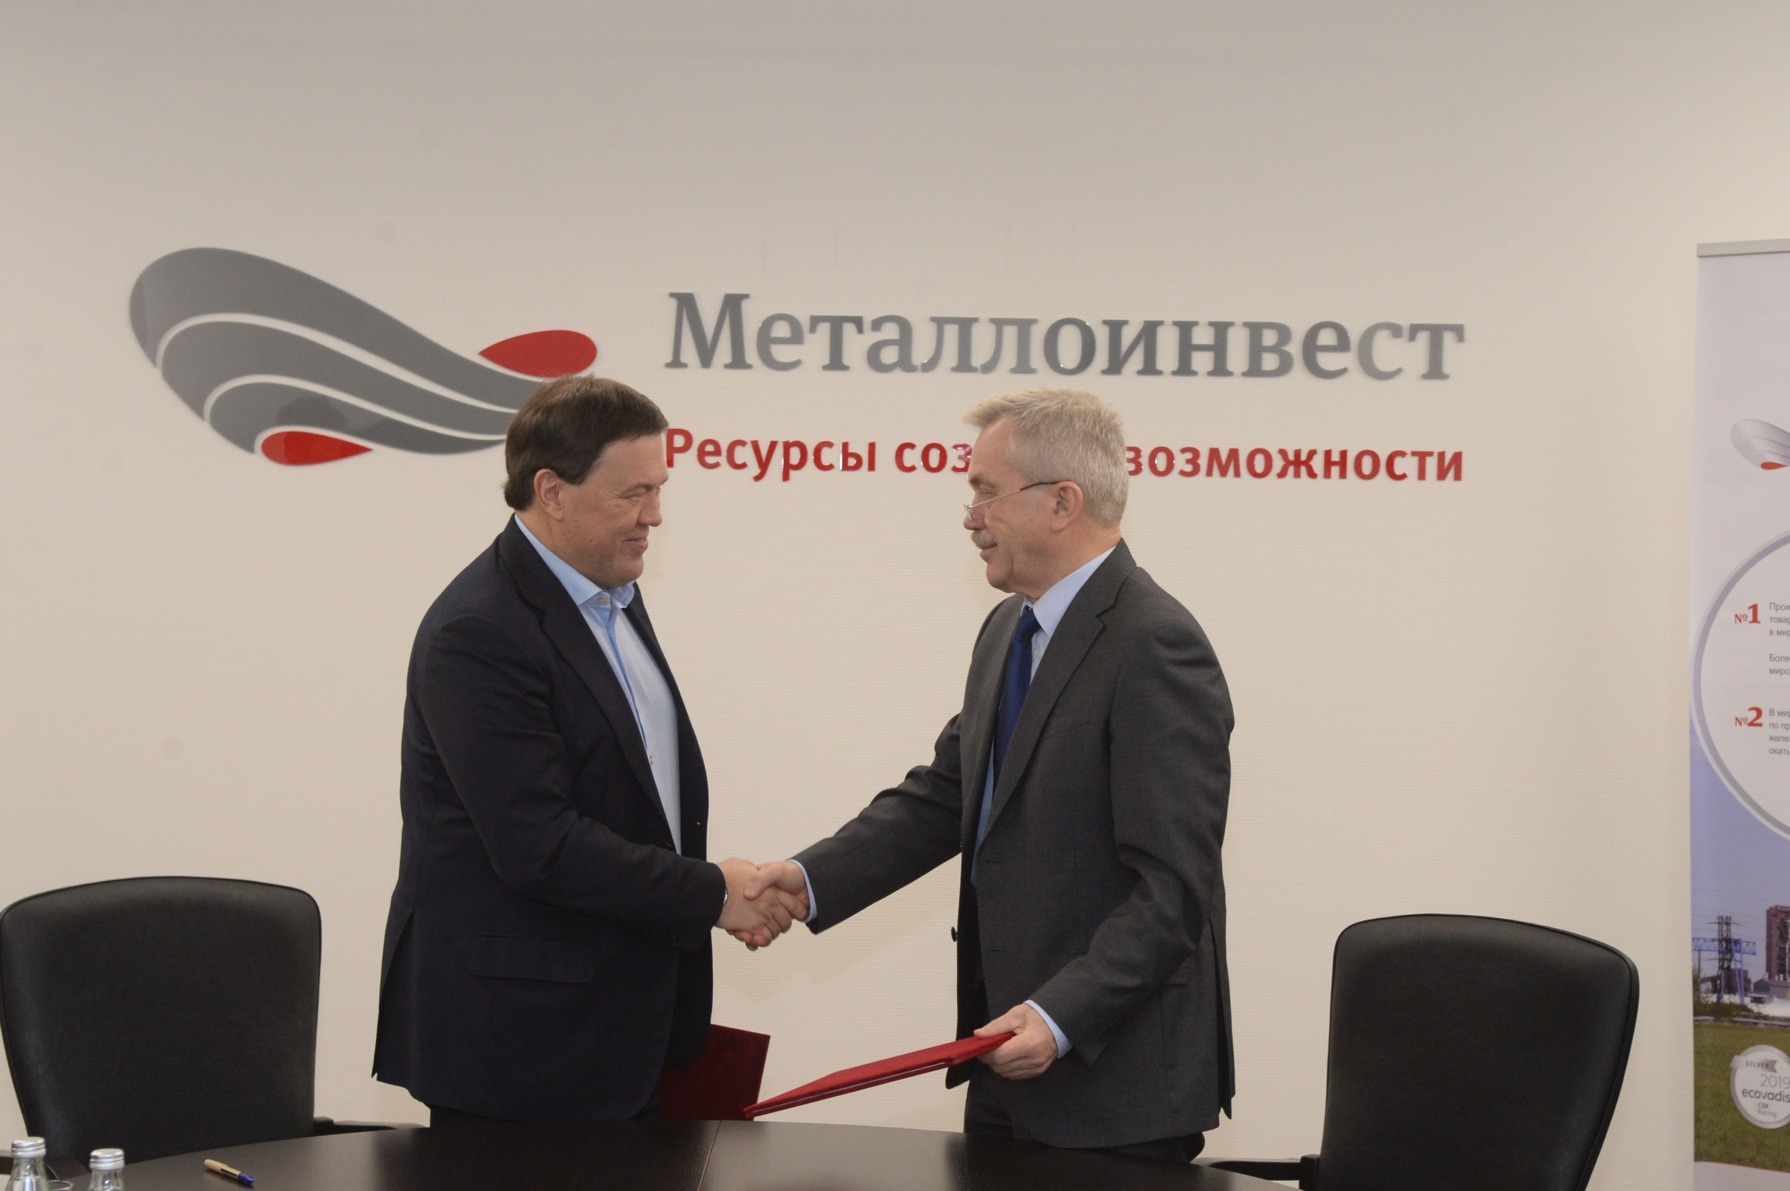 Белгородская область в 2020 году получит более 1,7 миллиарда рублей от «Металлоинвеста»*